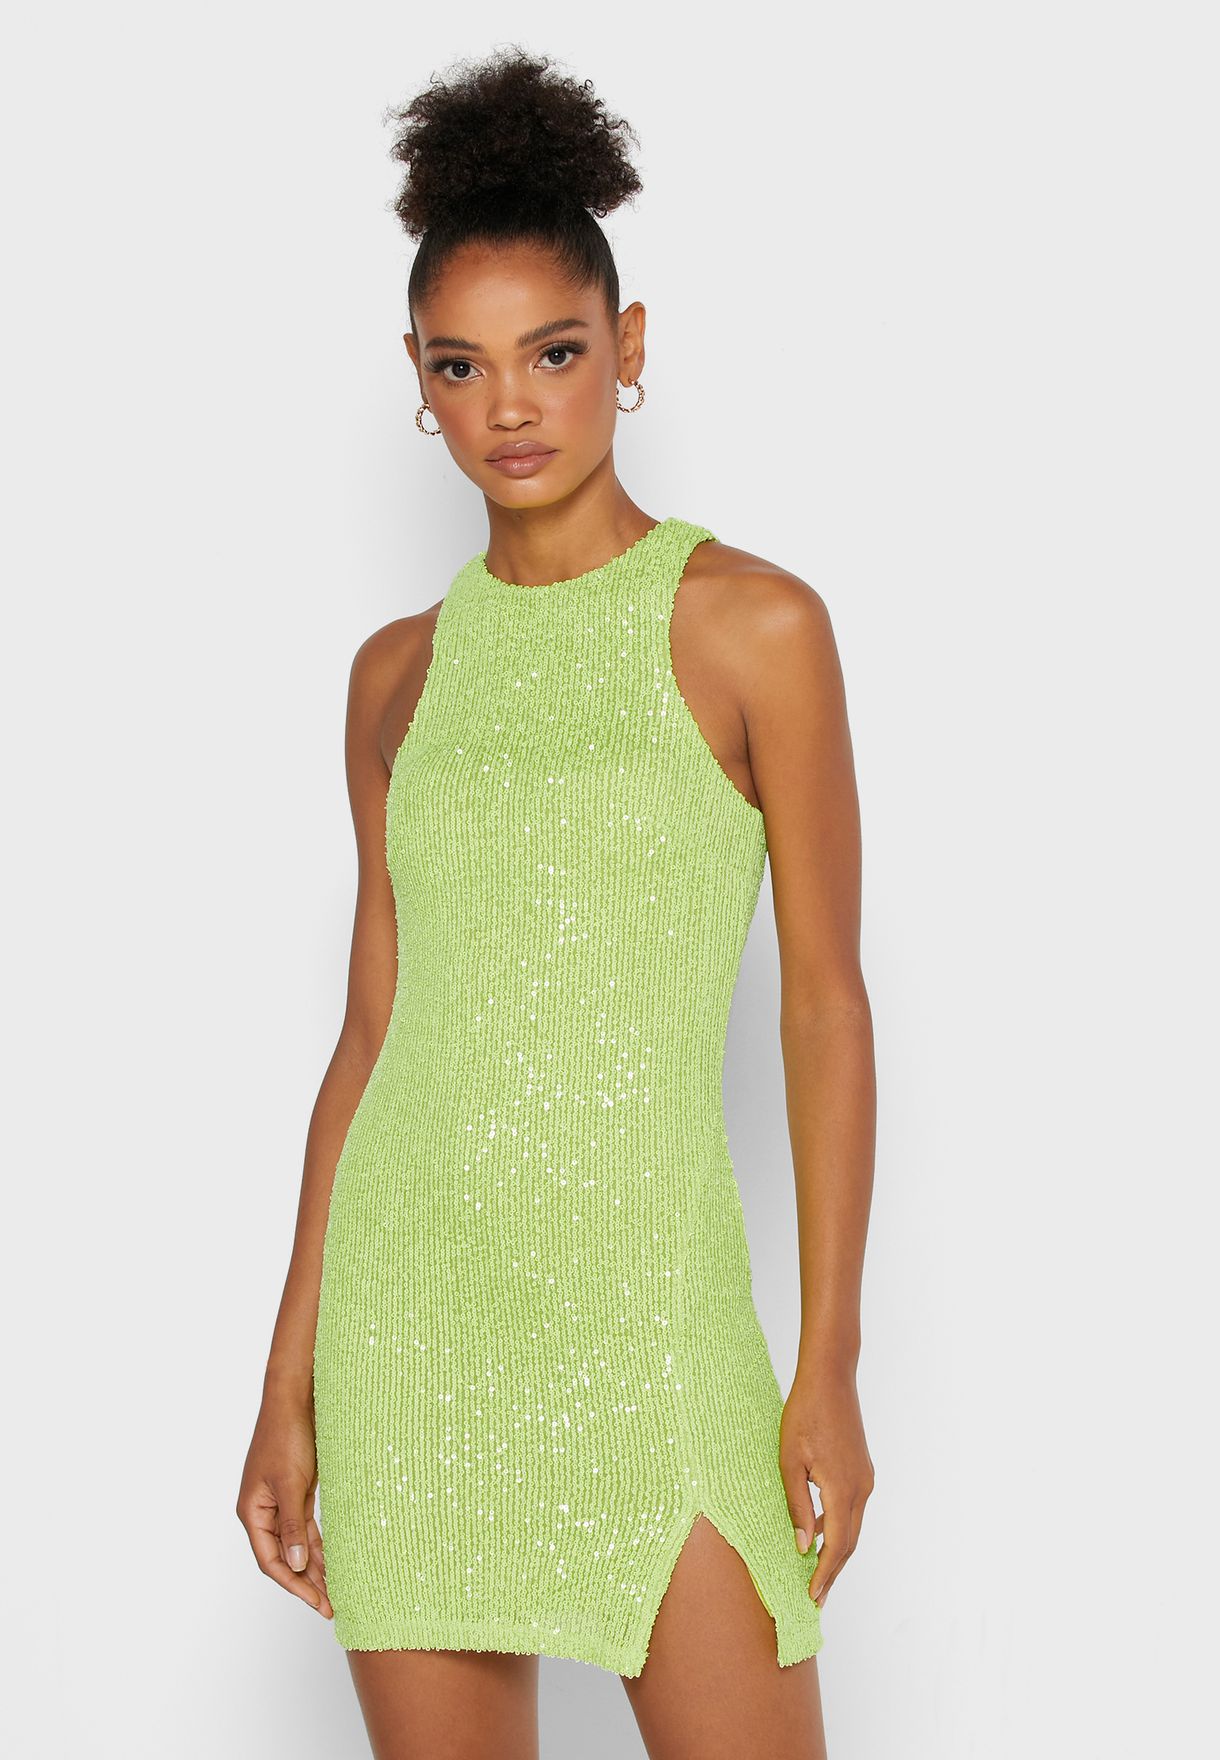 topshop neon dress